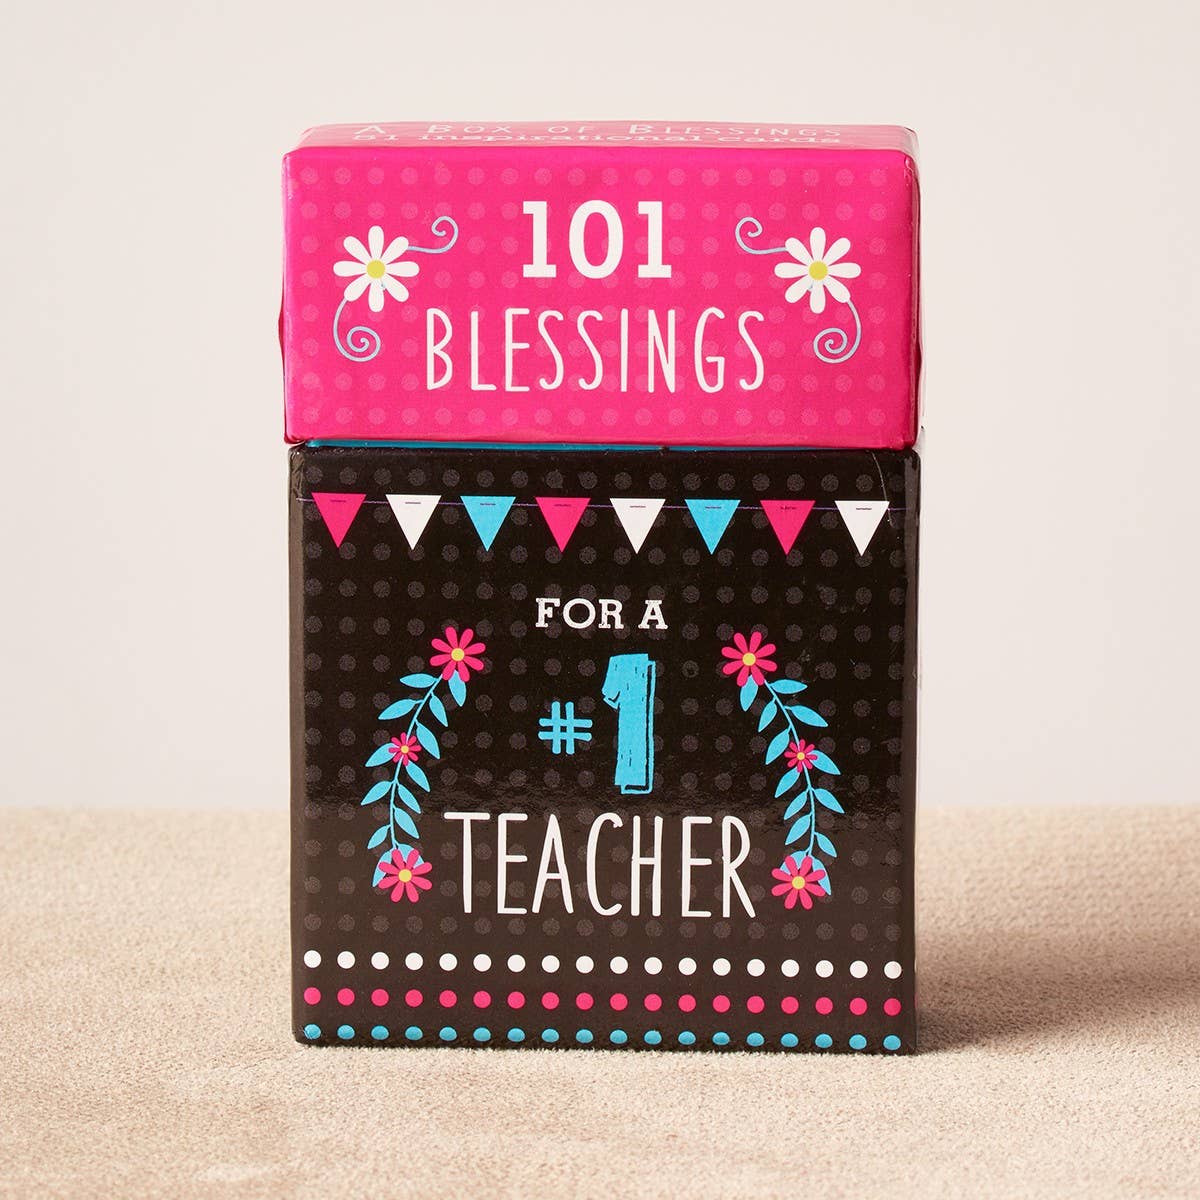 101 Blessings for a #1 Teacher Box of Blessings